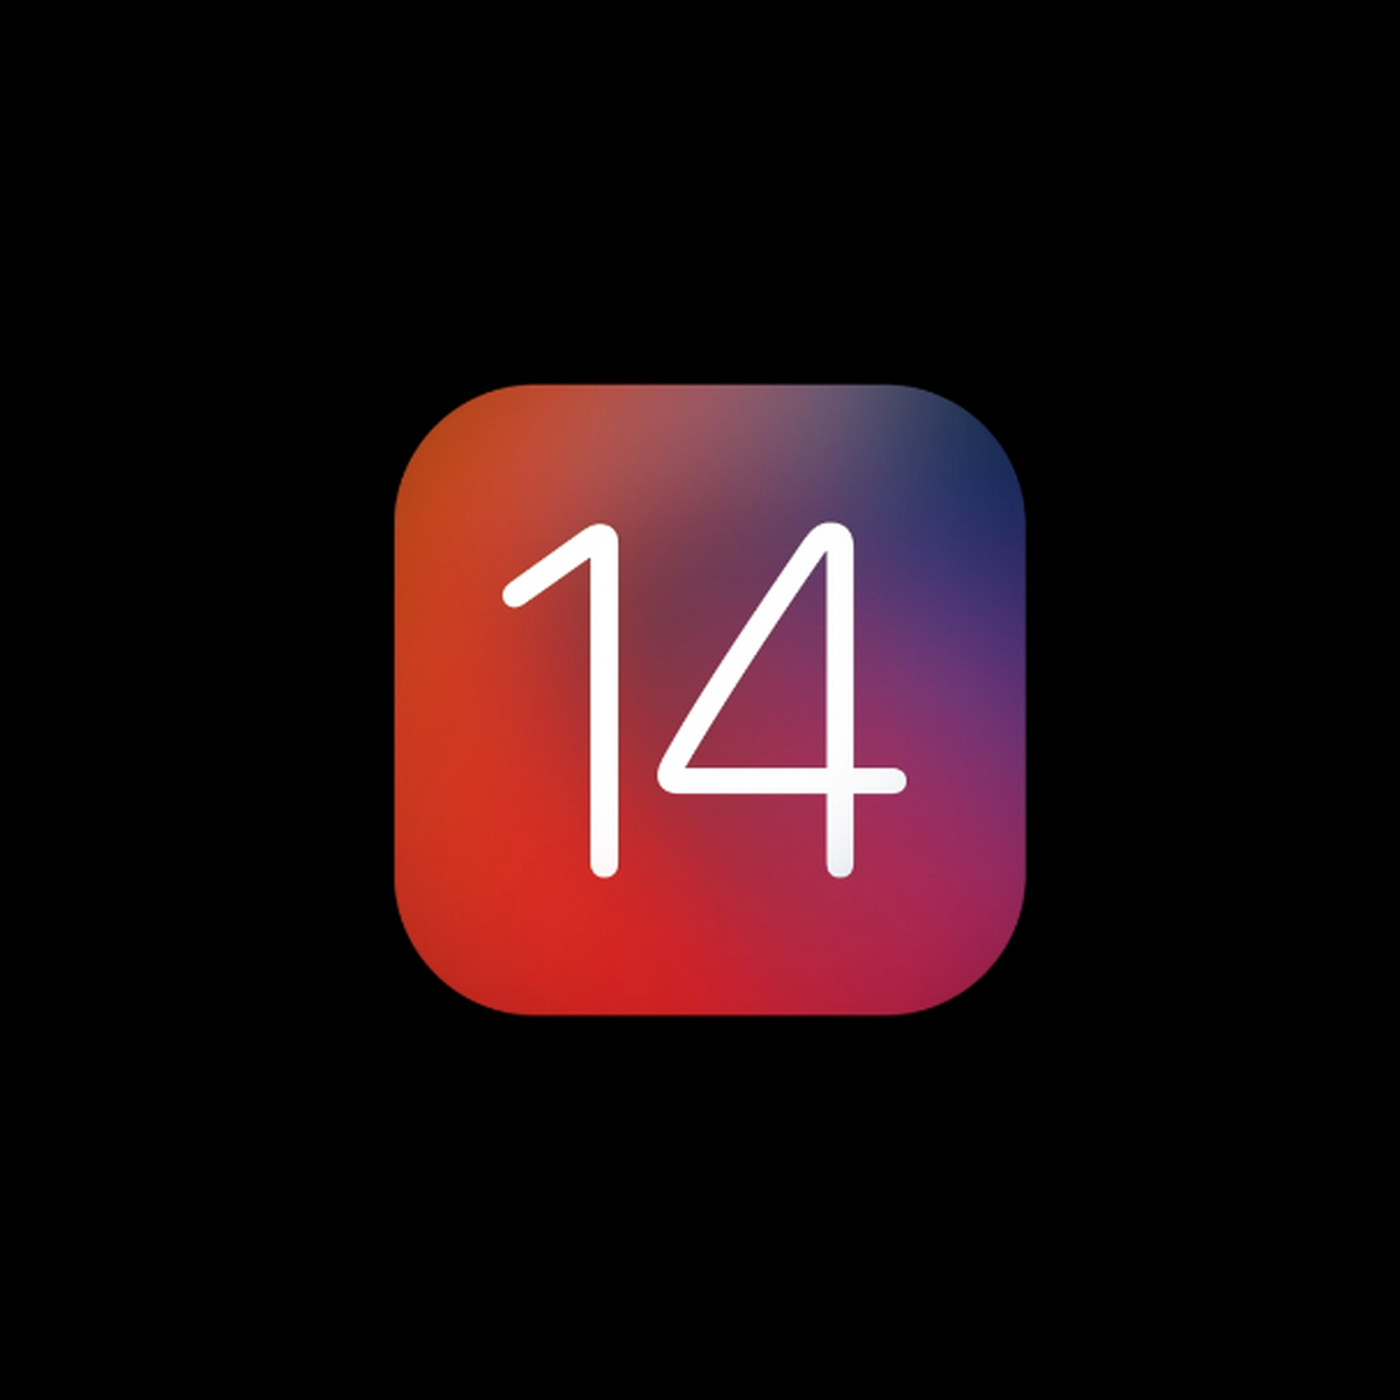 iOS 14 Official Logo